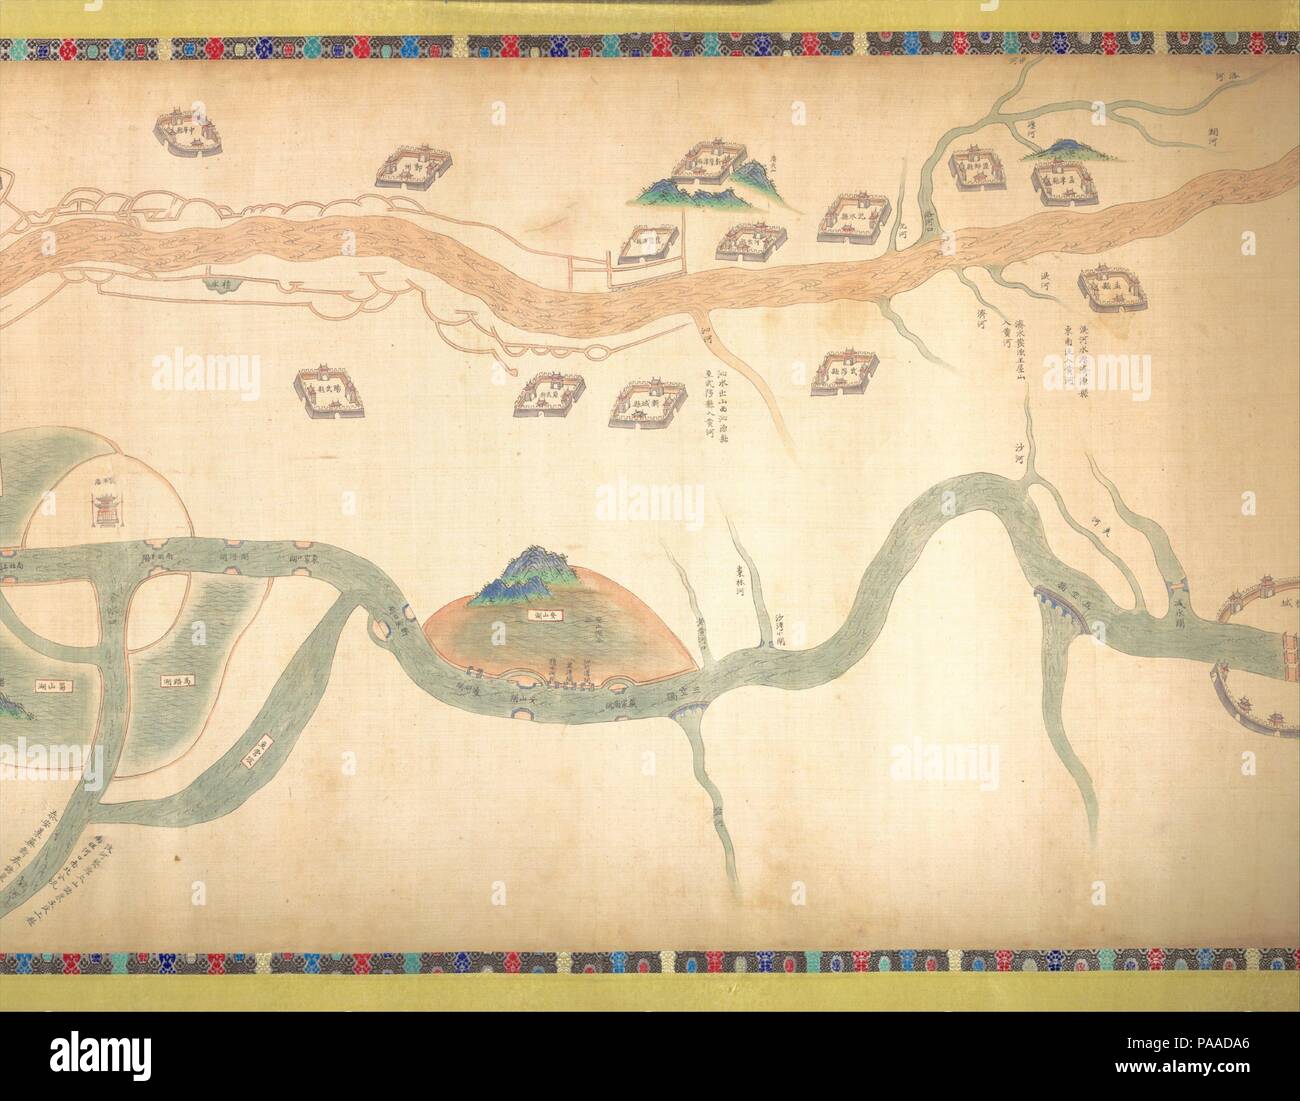 Karte der Grand Canal von Peking nach der Yangzi River. Artist: Unbekannter Künstler Chinesisch, späten 18. oder frühen 19. Jahrhundert. Kultur: China. Abmessungen: Bild: 21 7/8 in. × 30 ft. 7 in. (55,6 × 932.2 cm) Gesamt: H.32cm. (81,9 cm). Datum: Ende des 18. oder frühen 19. Jahrhundert. Verwalten von Chinas komplexes Netz aus Flüssen, Kanälen, und Bewässerungsanlagen ist einer der das bleibende Anliegen seiner Herrscher. Aus dem vierzehnten Jahrhundert, die Grand Canal diente als wichtige Verkehrsader für den Transport von Getreide aus der reichen landwirtschaftlichen Regionen südlich des Yangzi River in die Hauptstadt Peking Stockfoto